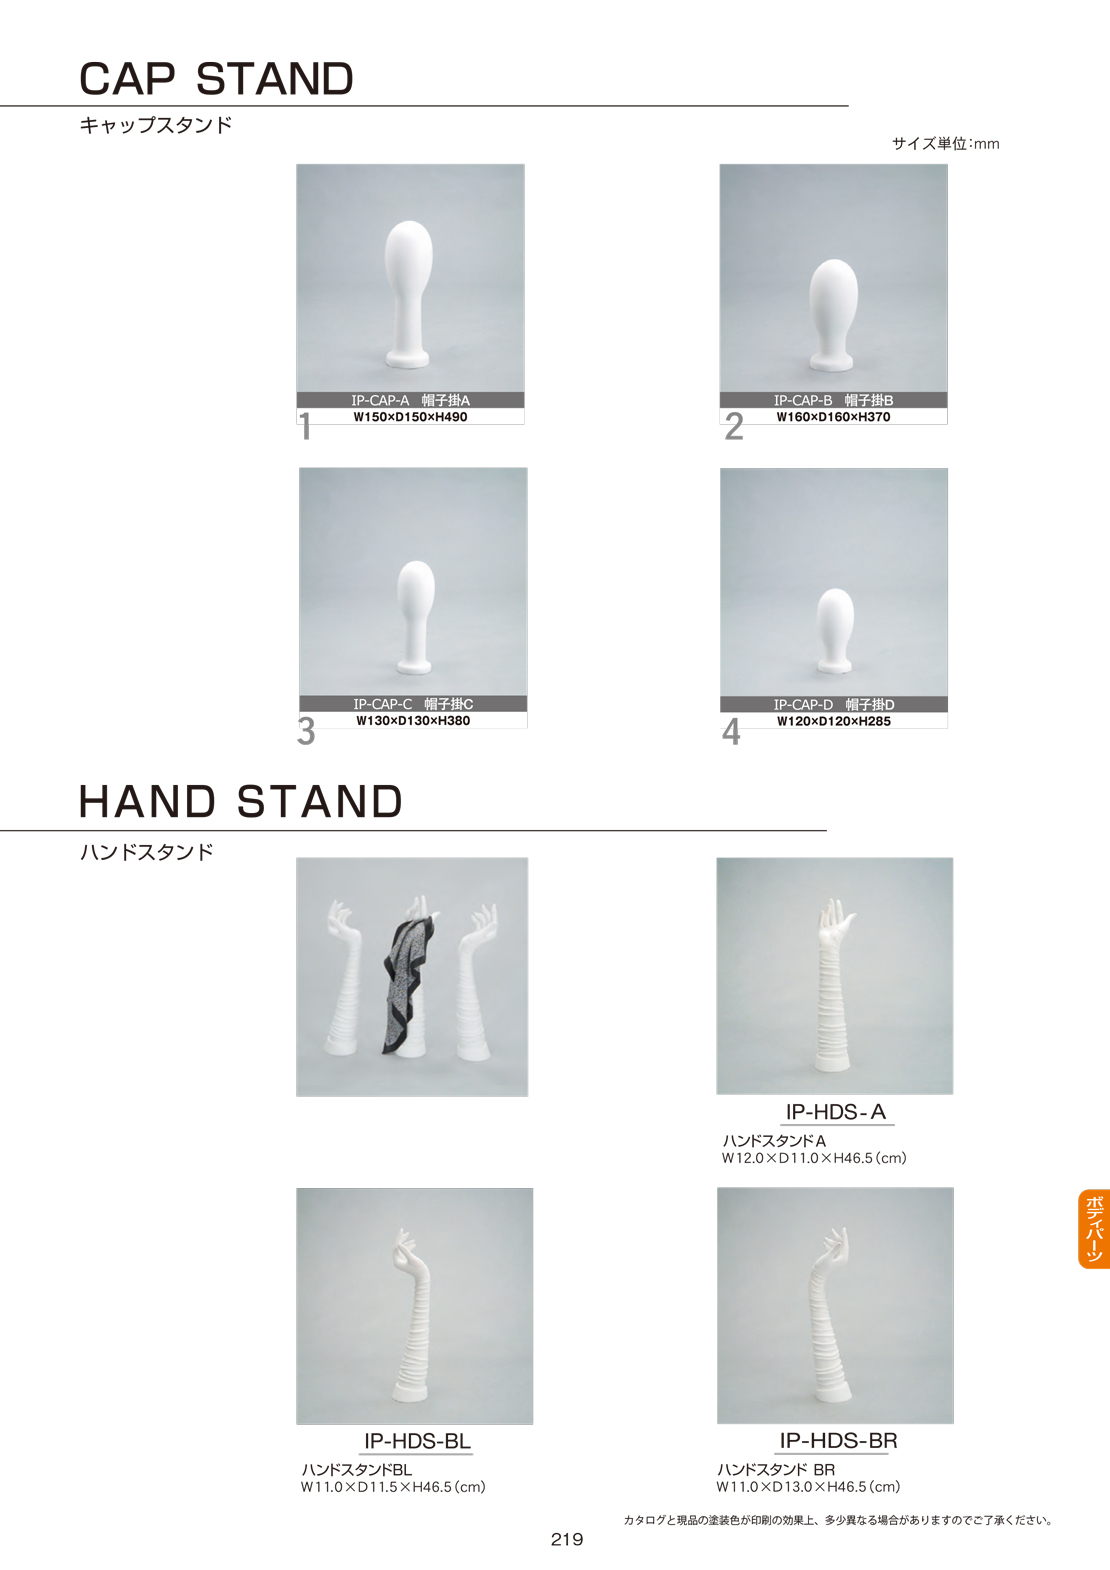 ボディパーツ / CAP STAND・HAND STAND